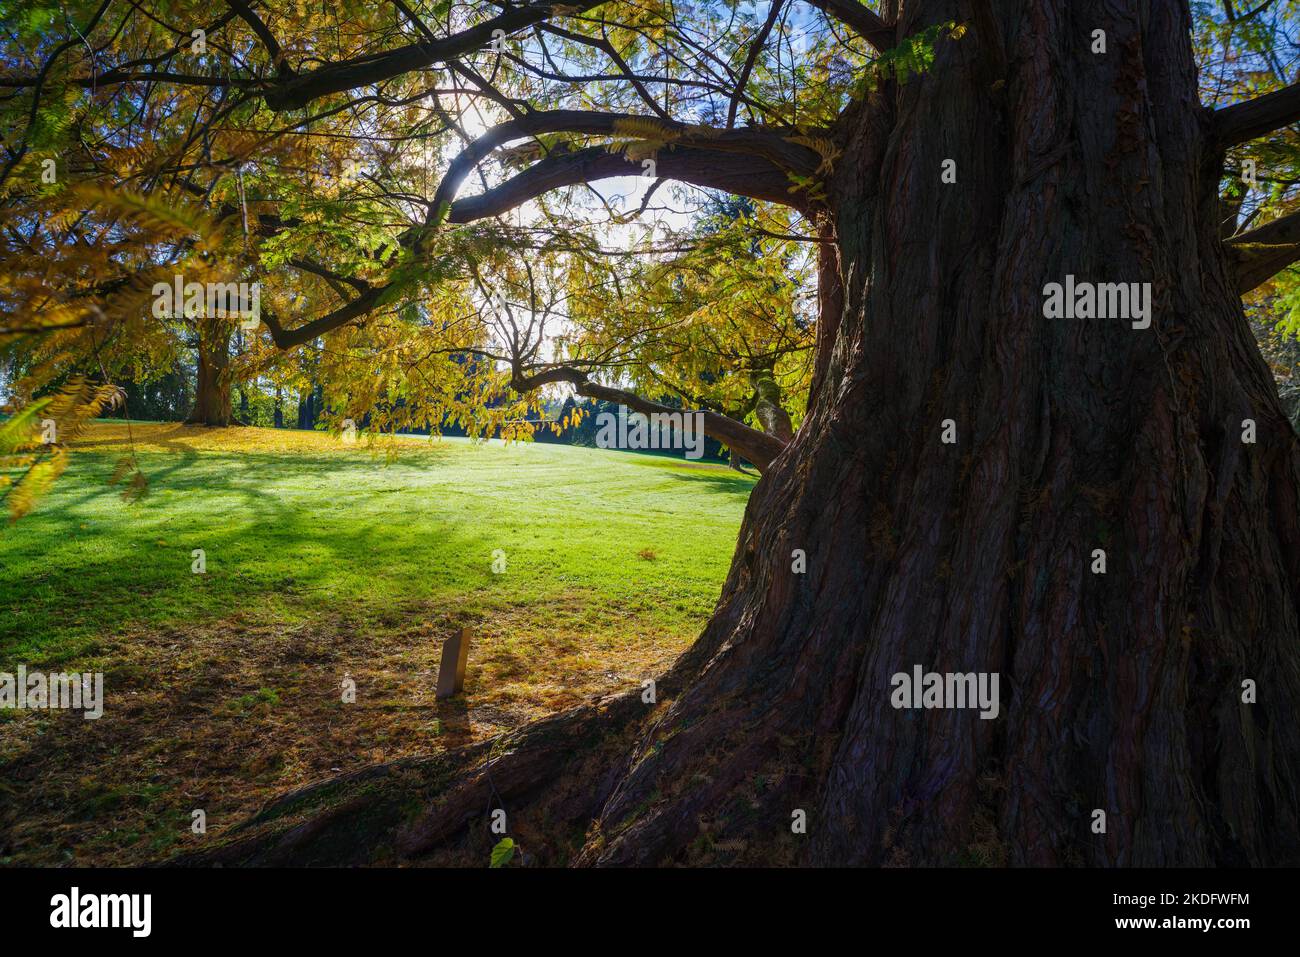 enorme tronco de árbol en un parque de otoño Foto de stock